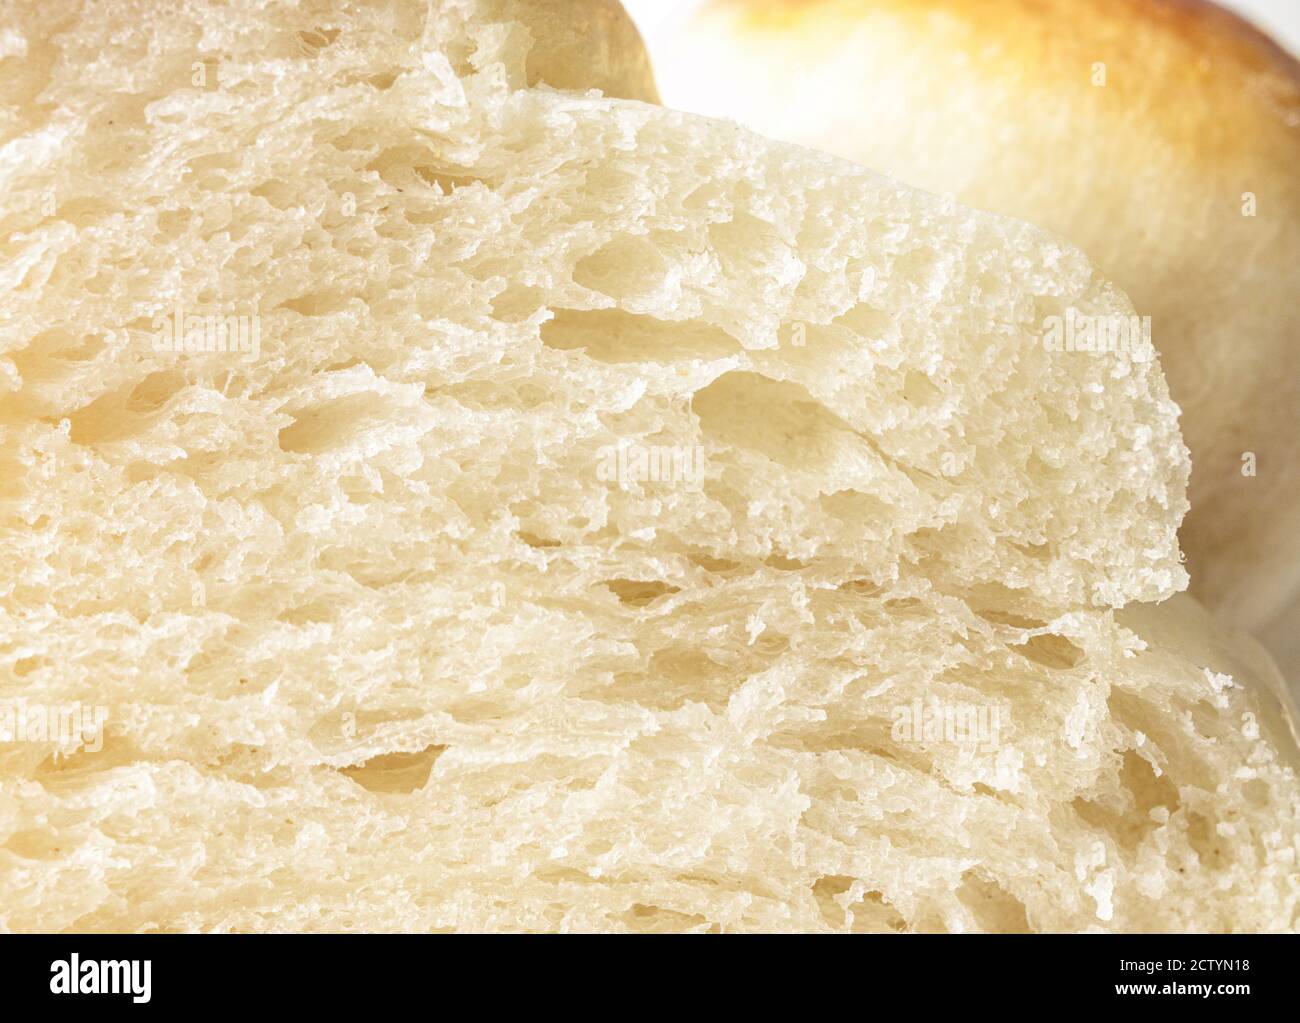 Gros plan de pain de levure tranché. Photo détaillée d'un pain Challah doux et moelleux, d'un pain zopf au beurre suisse traditionnel ou d'un pain blanc classique. Banque D'Images